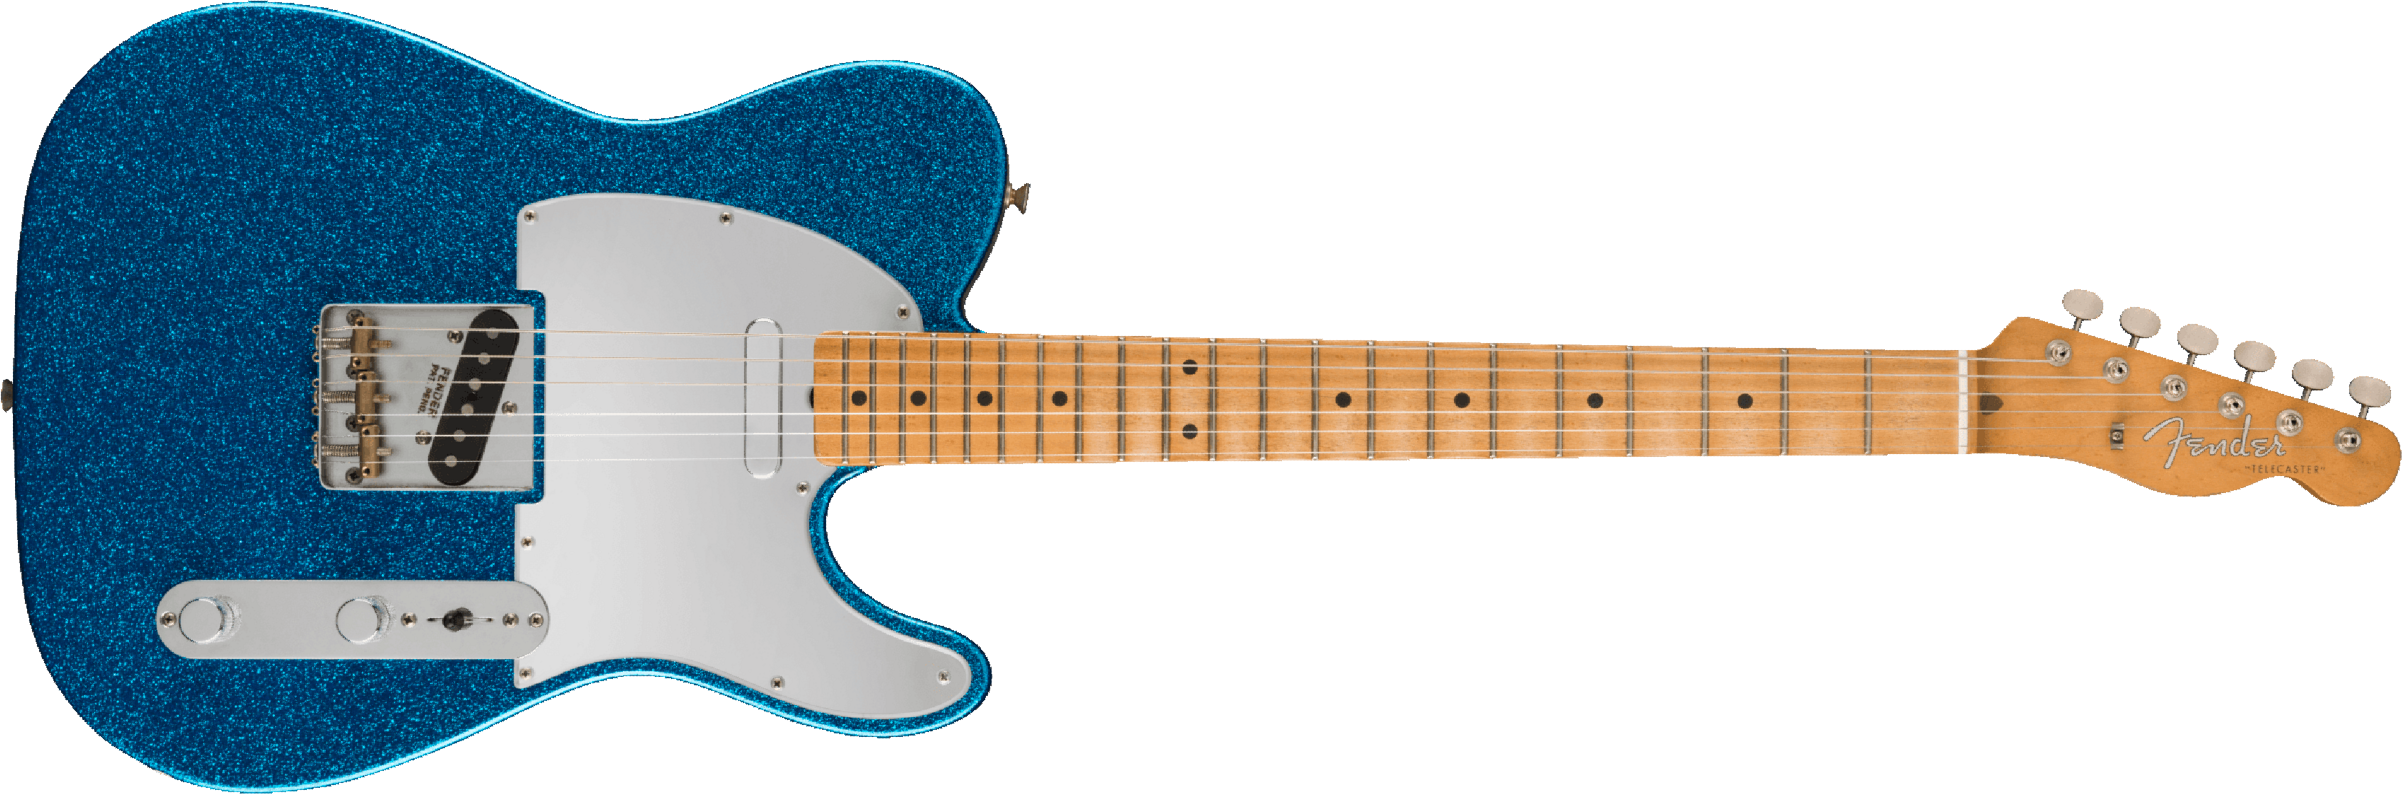 Fender Telecaster J. Mascis Signature 2s Ht Mn - Sparkle Blue - Tel shape electric guitar - Main picture